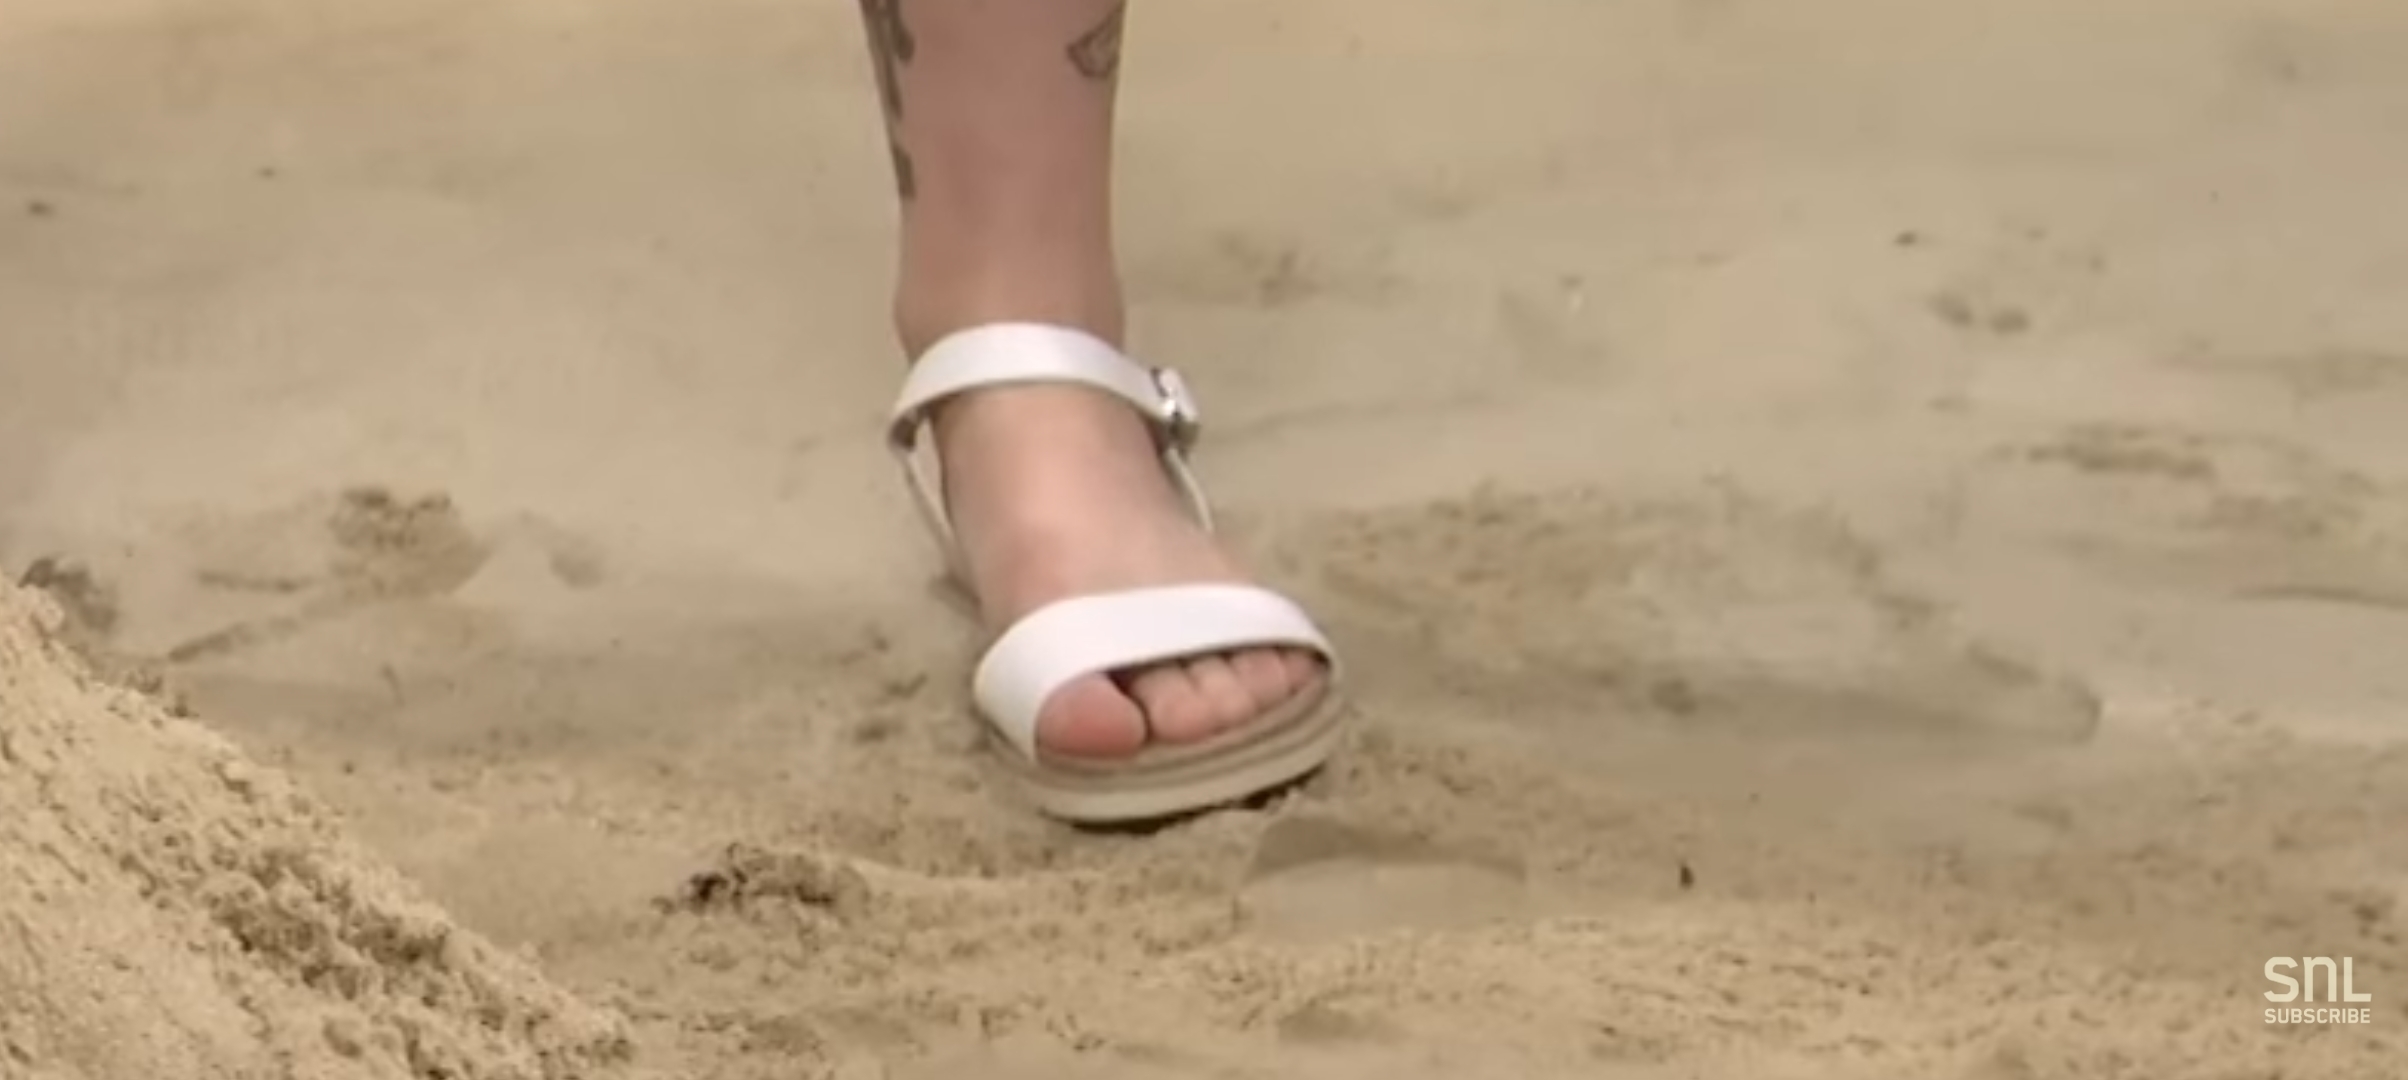 Sarah sherman feet